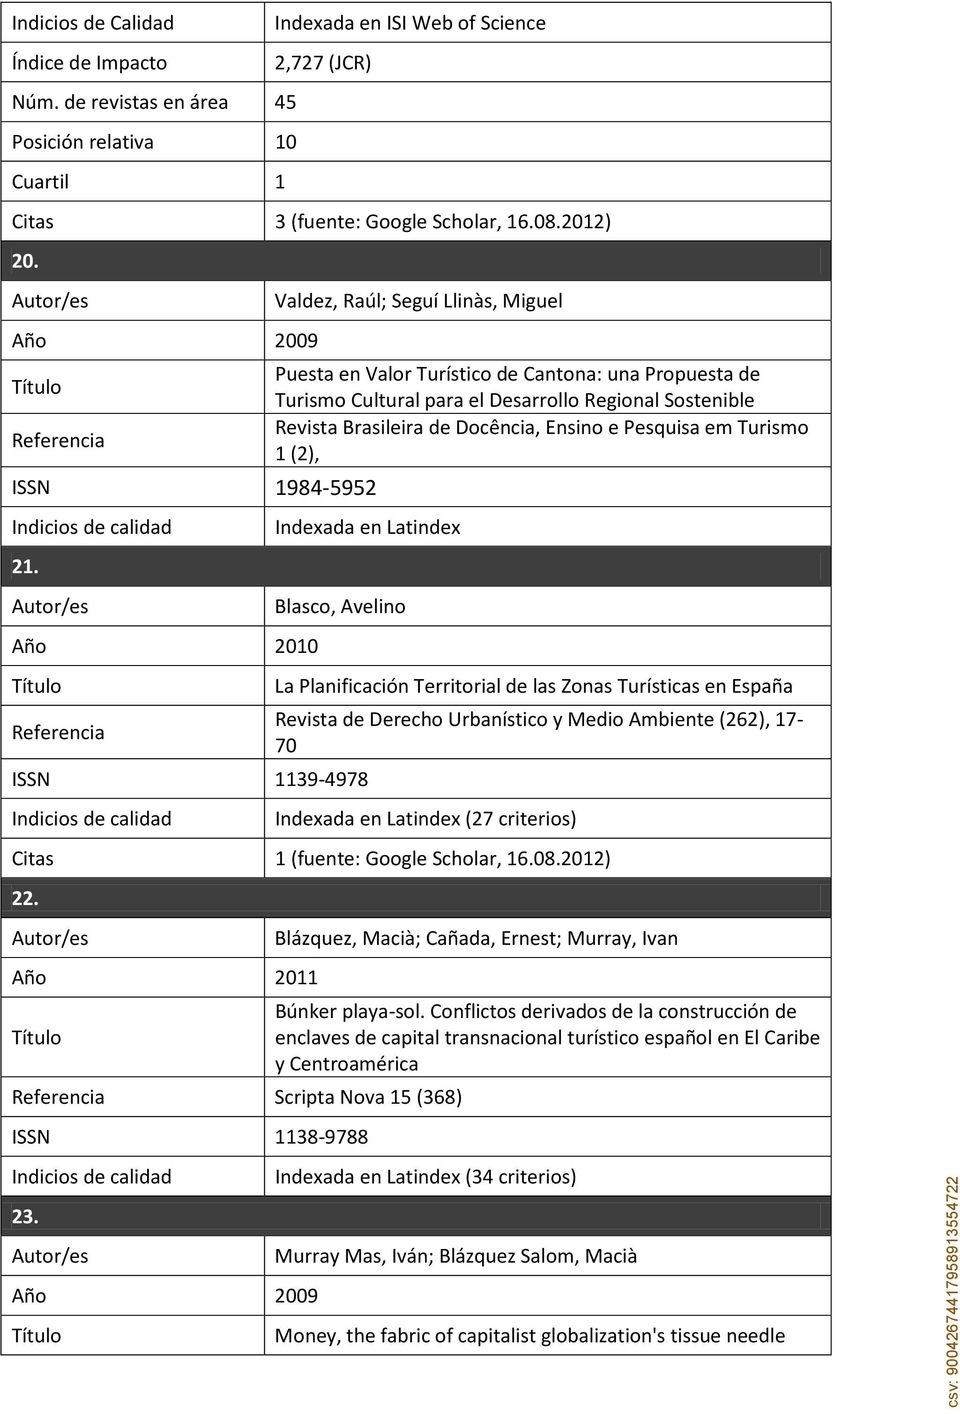 Pesquisa em Turismo 1 (2), Indexada en Latindex Blasco, Avelino ISSN 1139-4978 Indicios de calidad La Planificación Territorial de las Zonas Turísticas en España Revista de Derecho Urbanístico y